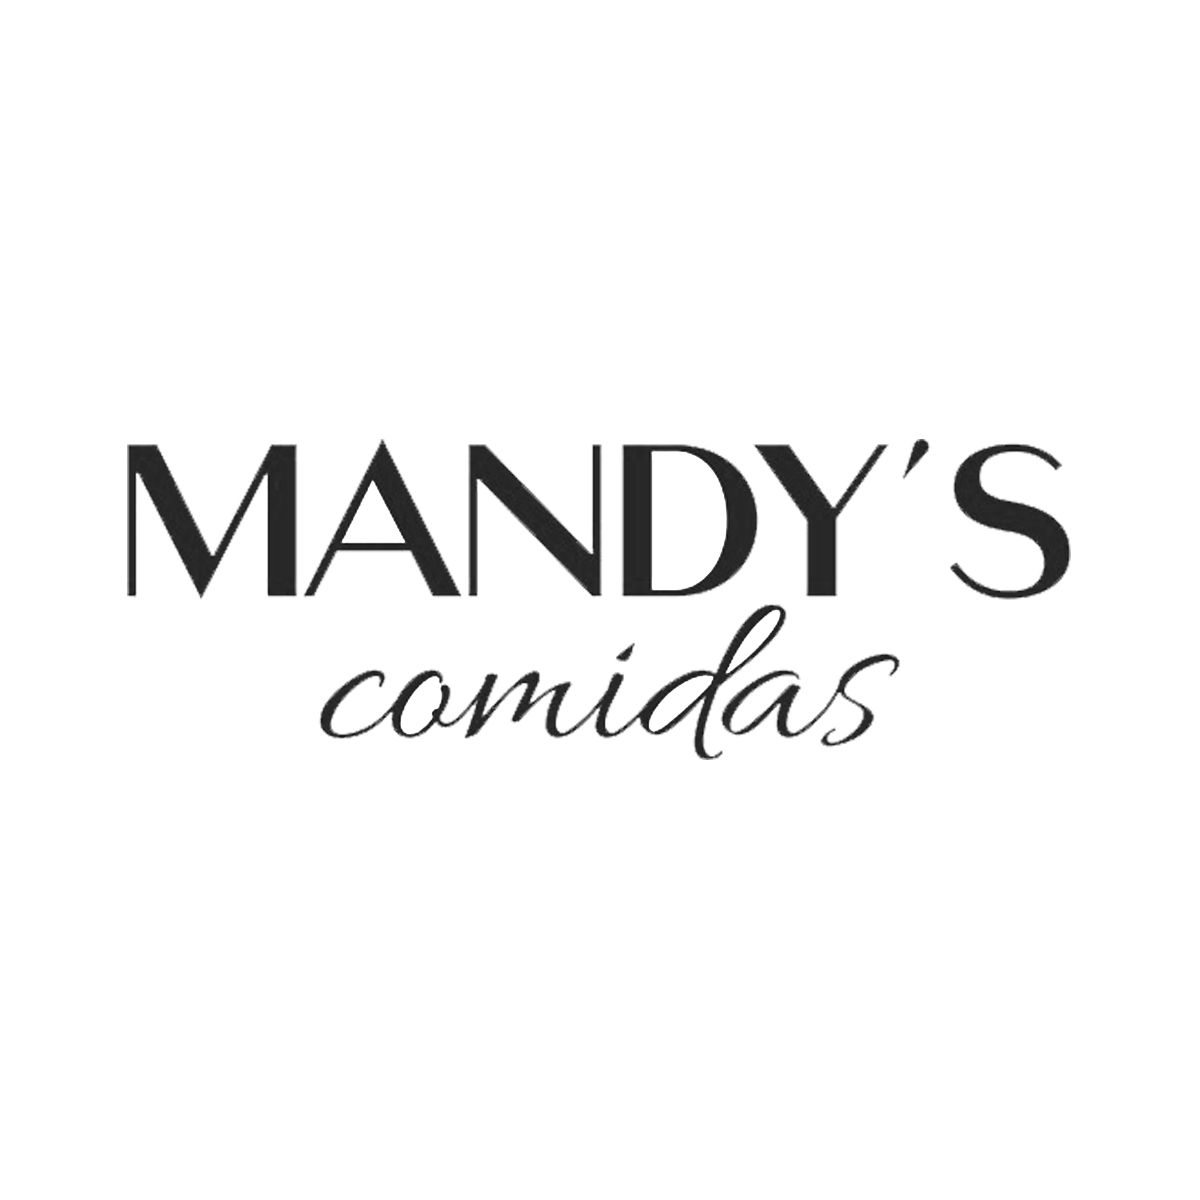 MANDY'S (1)